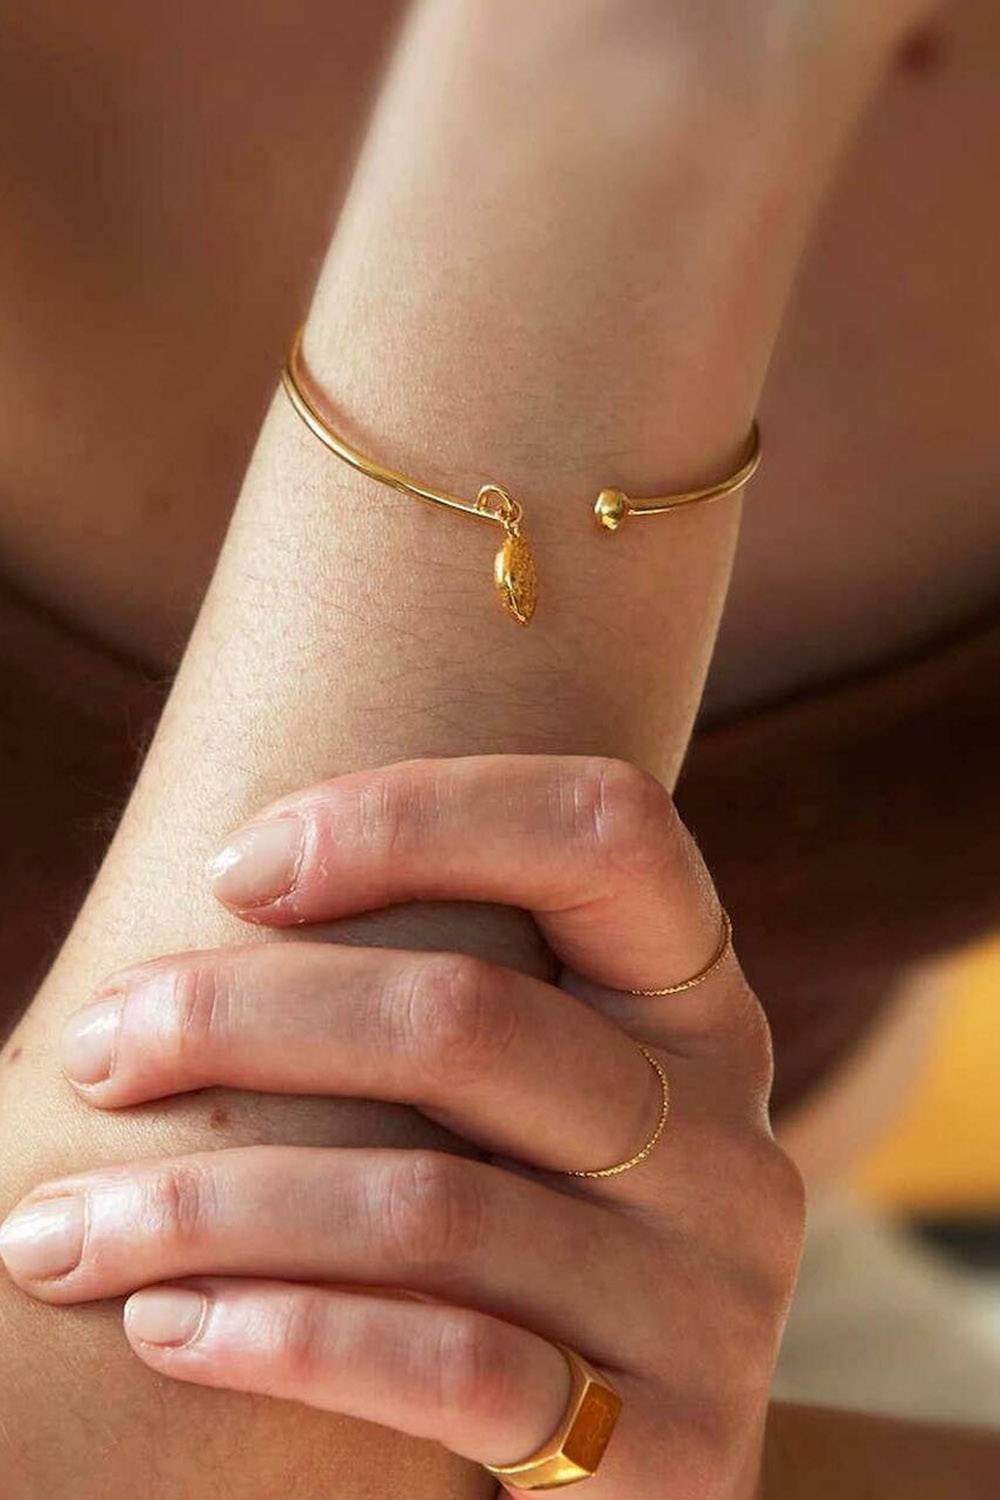 nouare jewelry eco-friendly bracelet